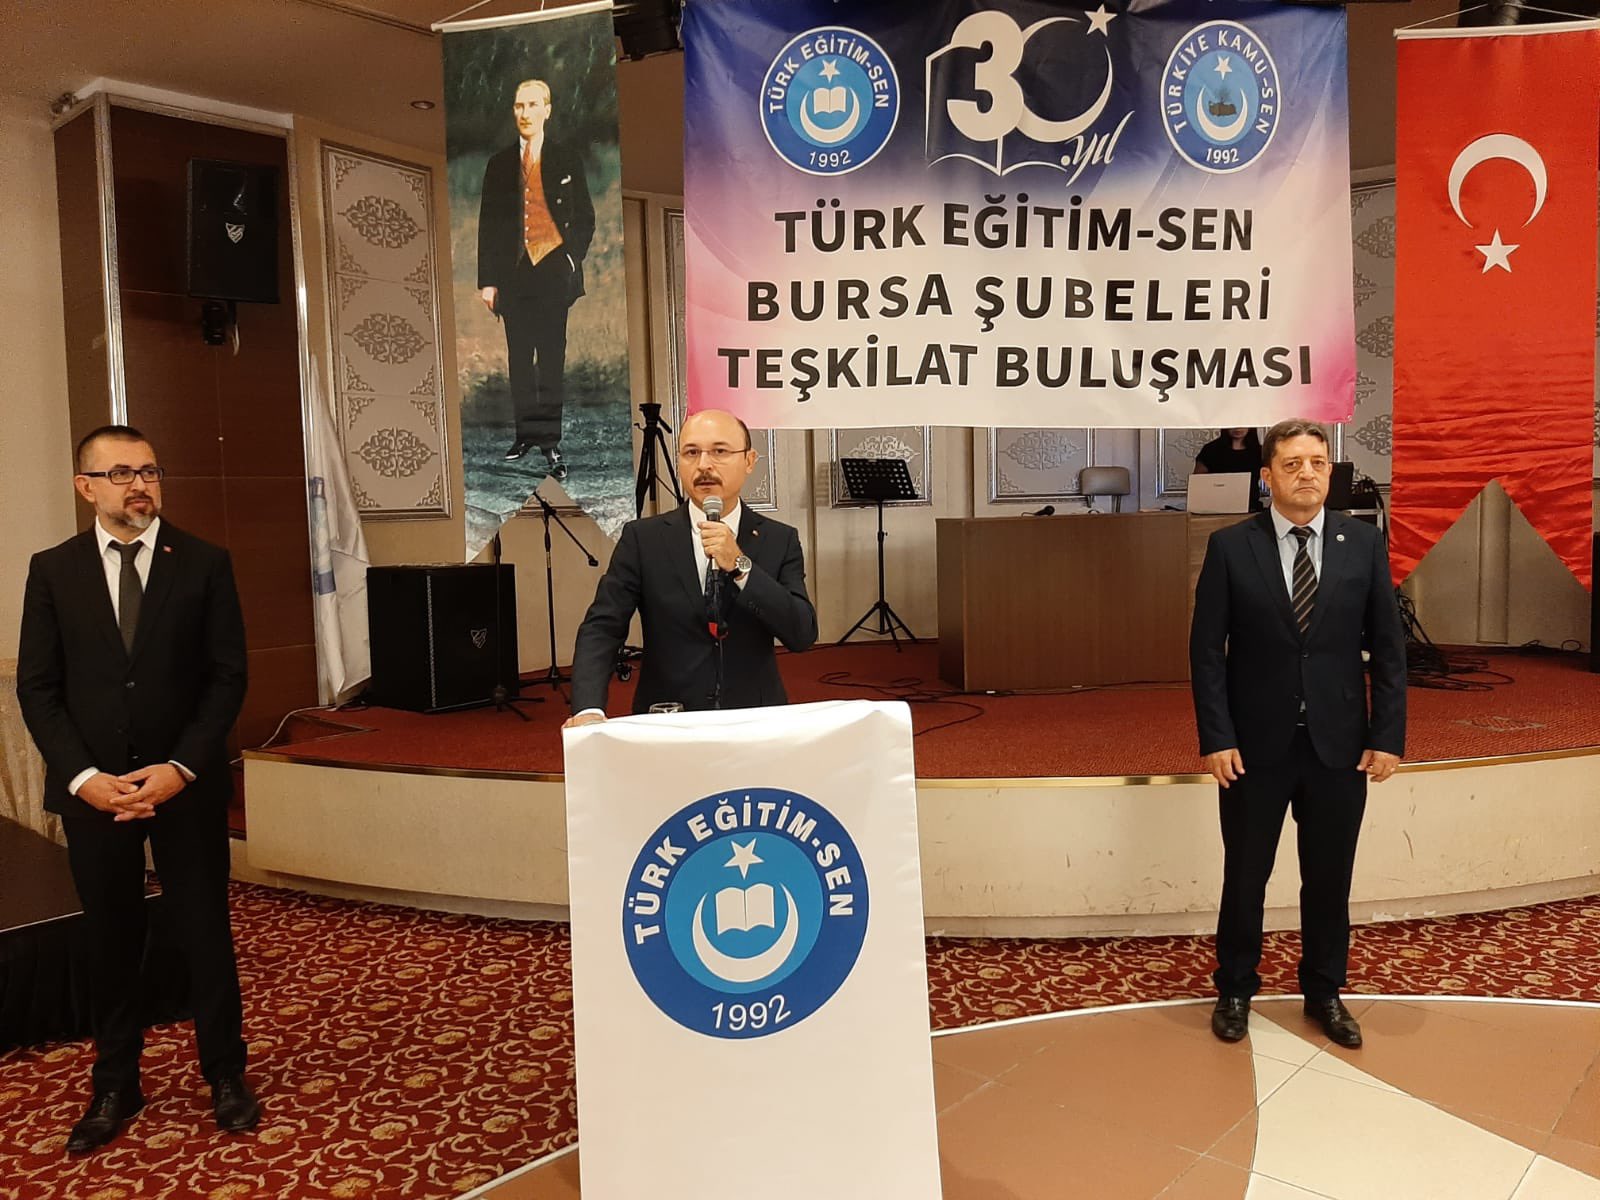 Türk Eğitim-Sen’e Ayar Vermeye Kimsenin Kalibresi Yetmez!